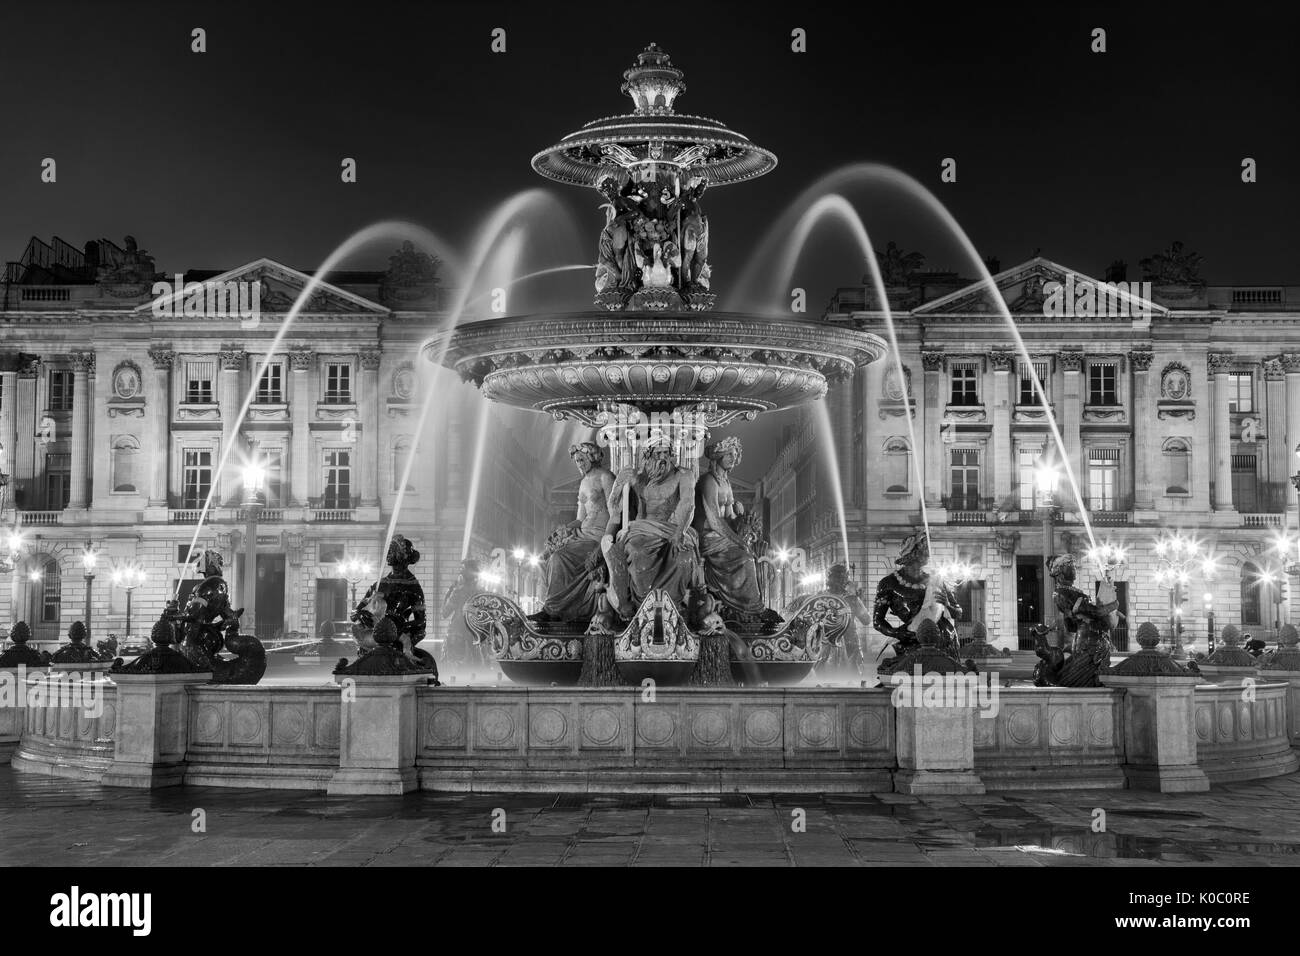 Fontaine des Fleuves, la fontana dei Fiumi in Place de la Concorde, Paris Francia Foto Stock